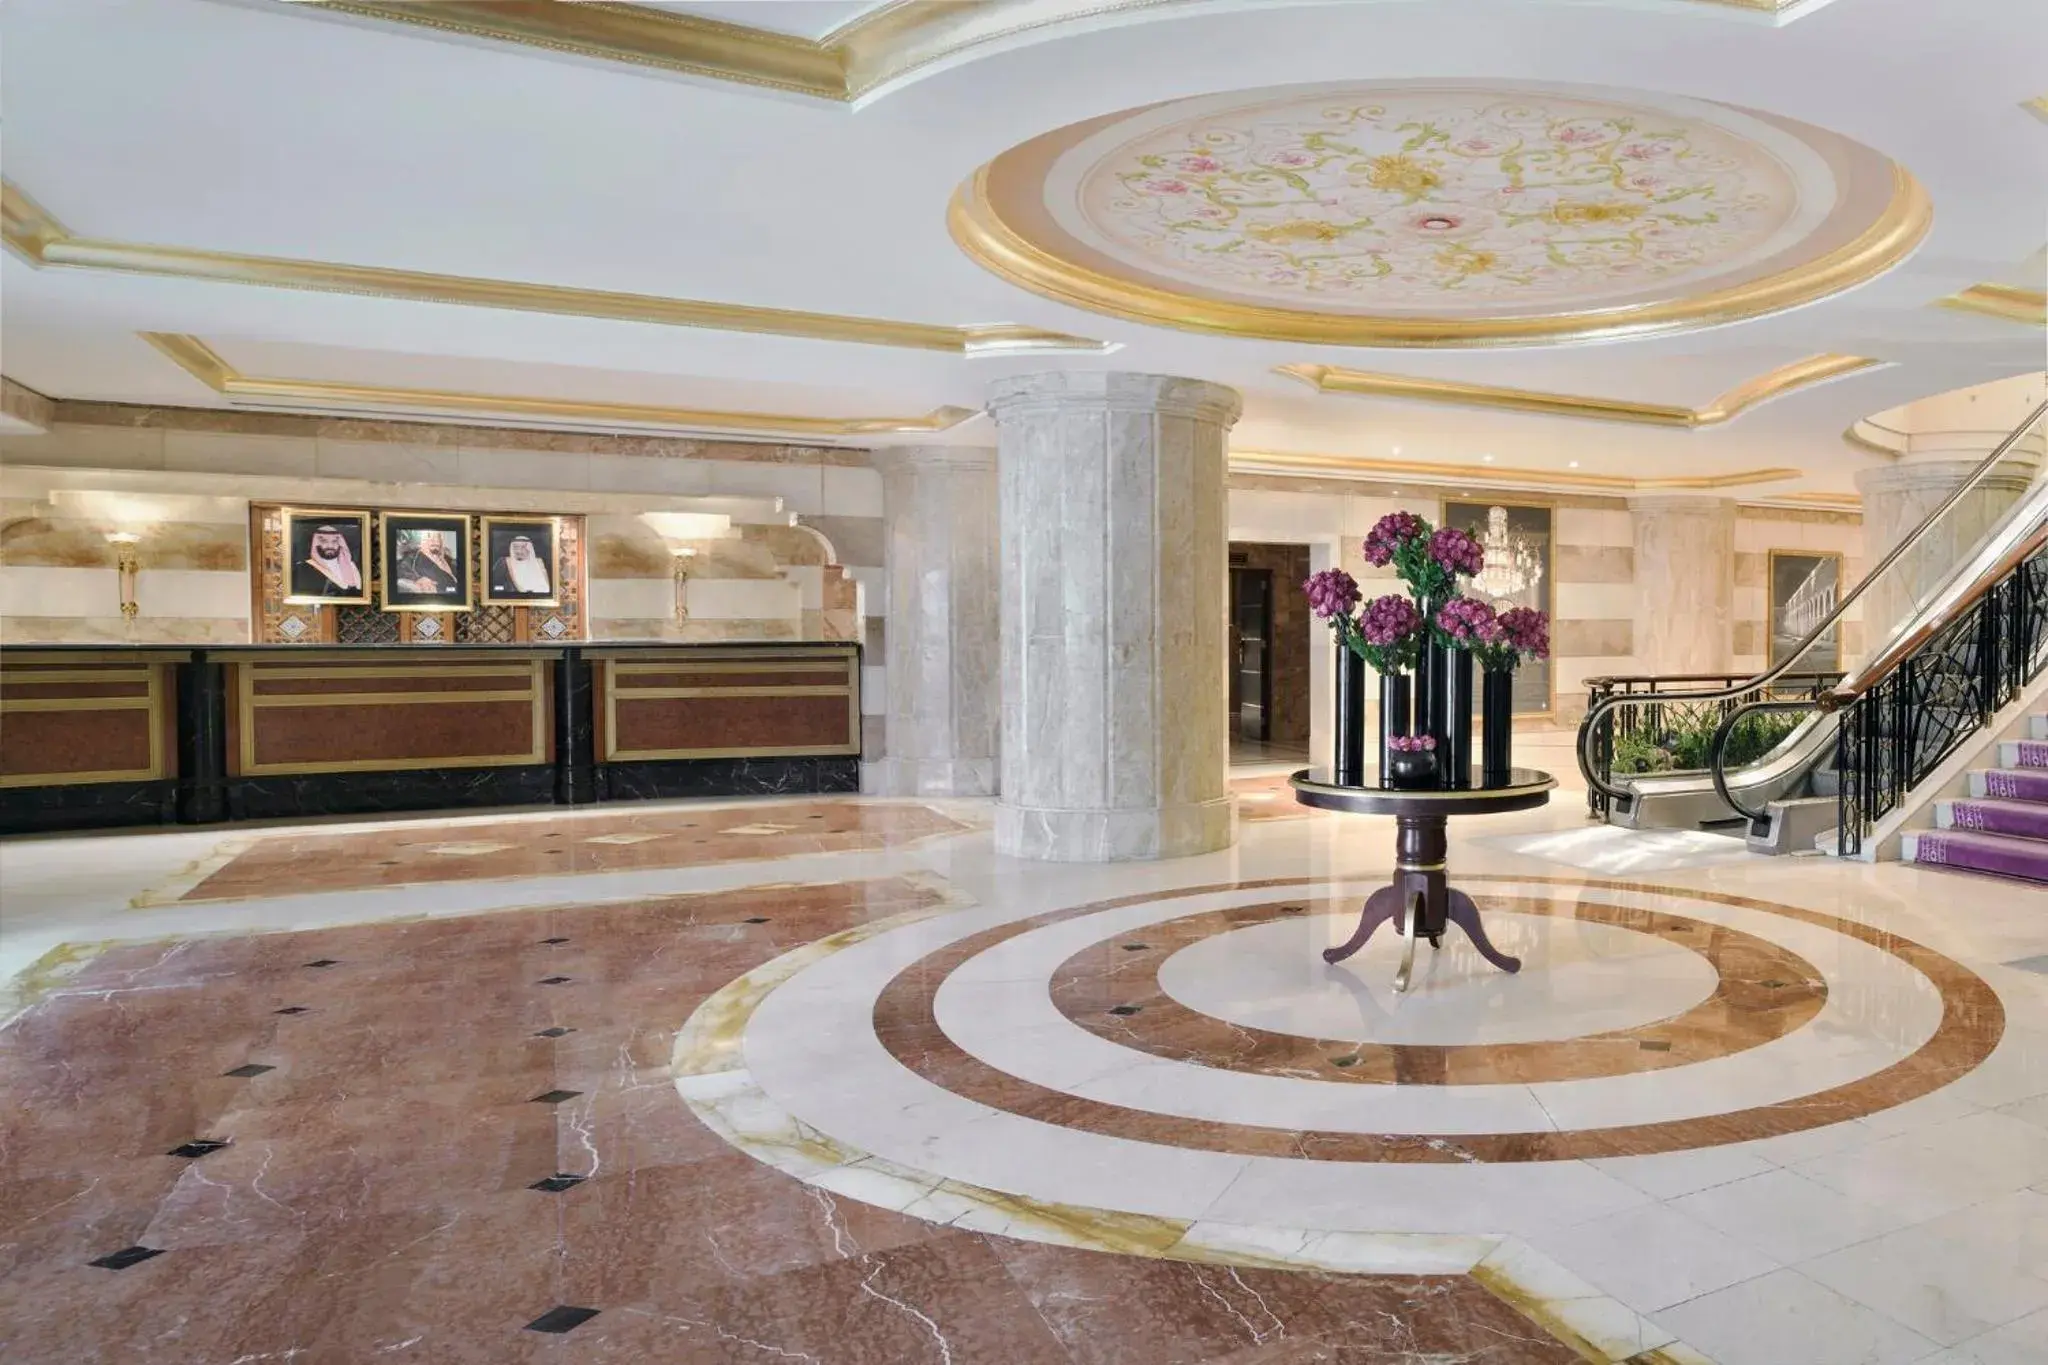 Lobby or reception, Lobby/Reception in Dar Al Iman InterContinental